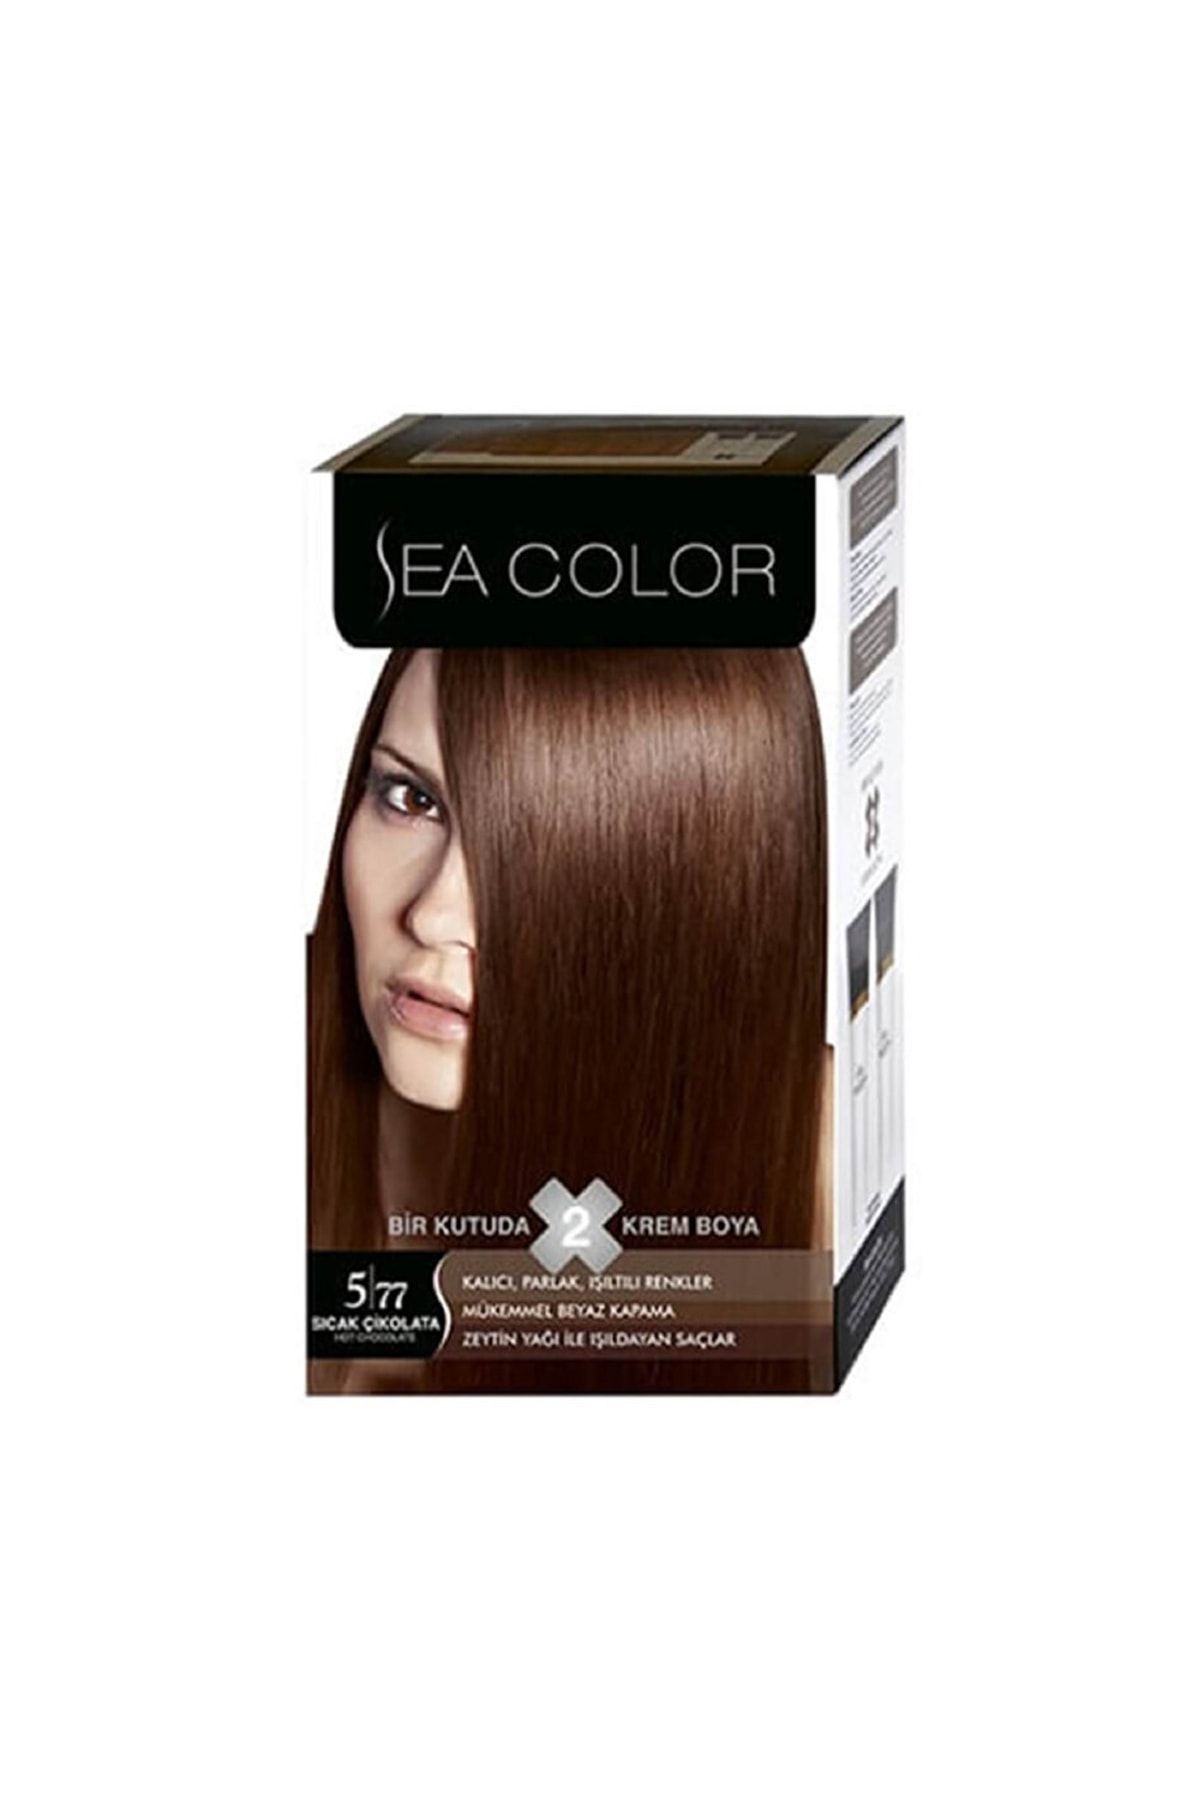 Sea Color Marka: Kit Boya 5.77 Sıcak Çikolata Kategori: Saç Boyası